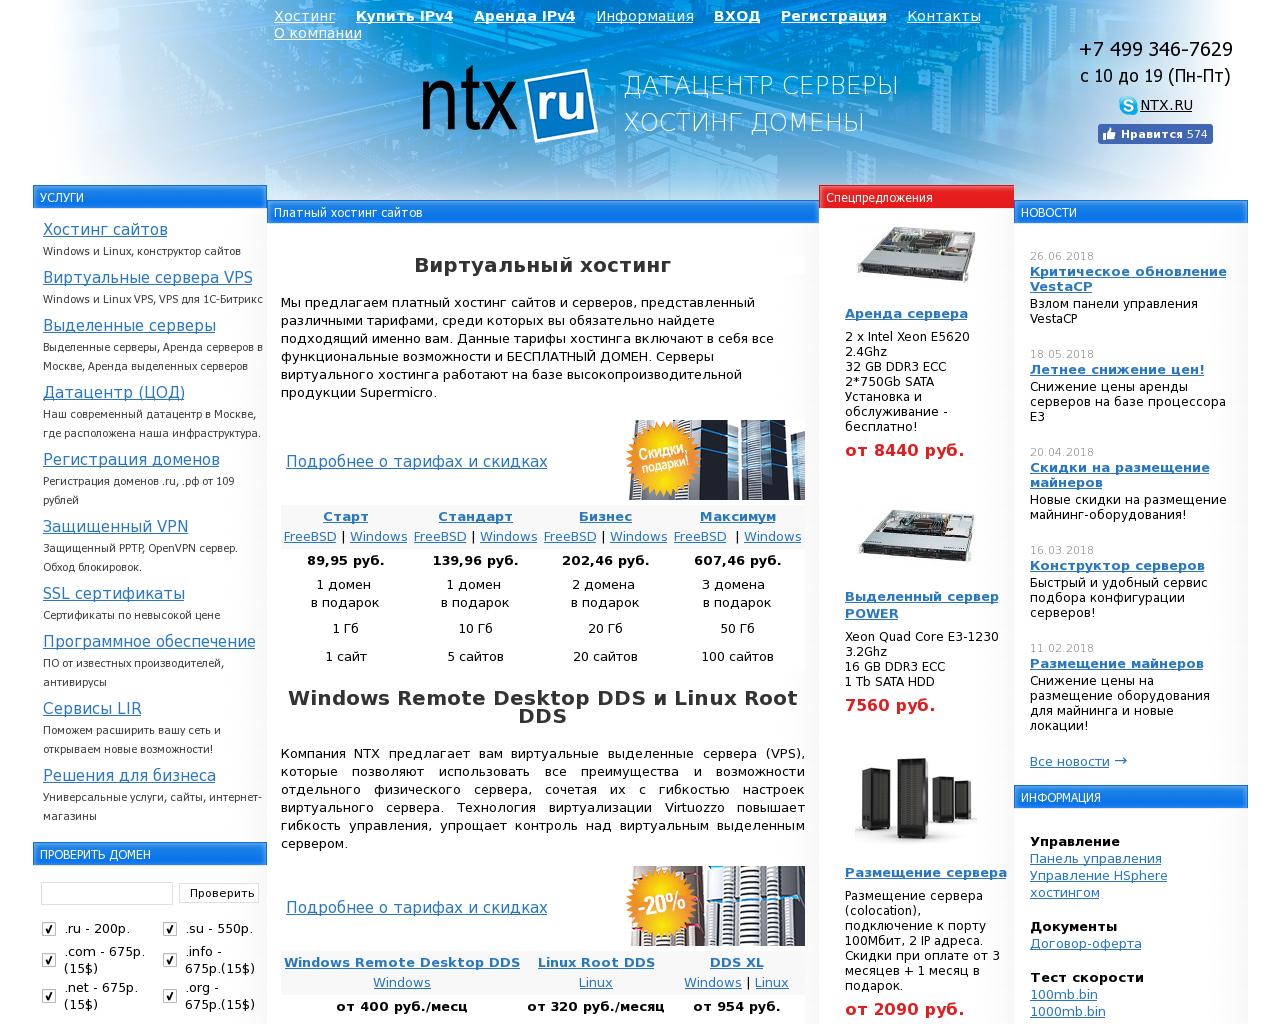 Изображение сайта ntx.ru в разрешении 1280x1024